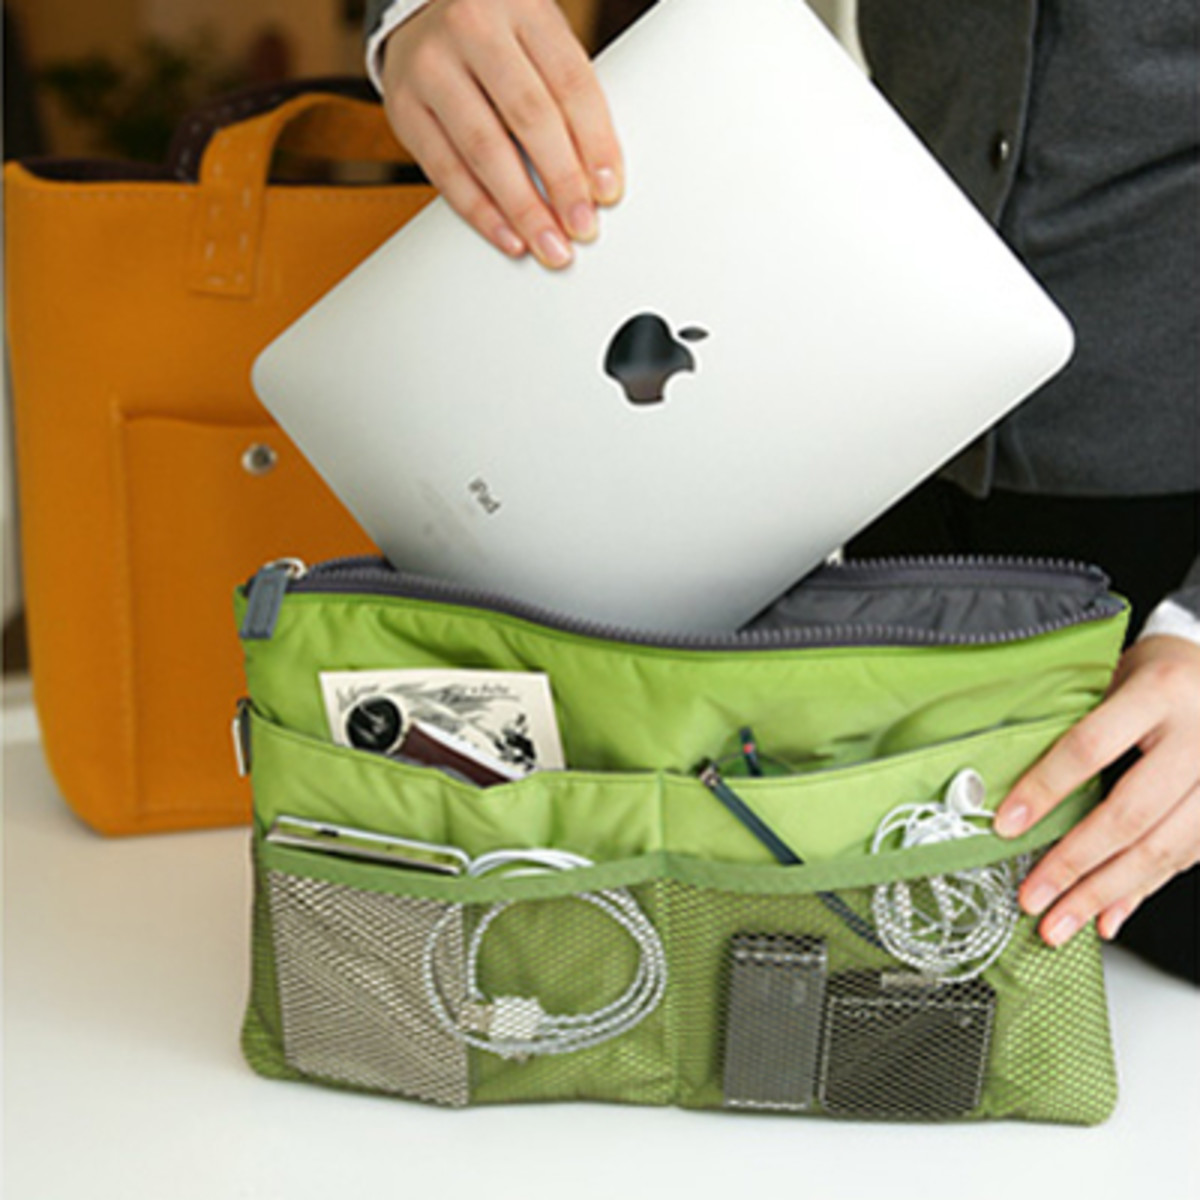 iPad bag